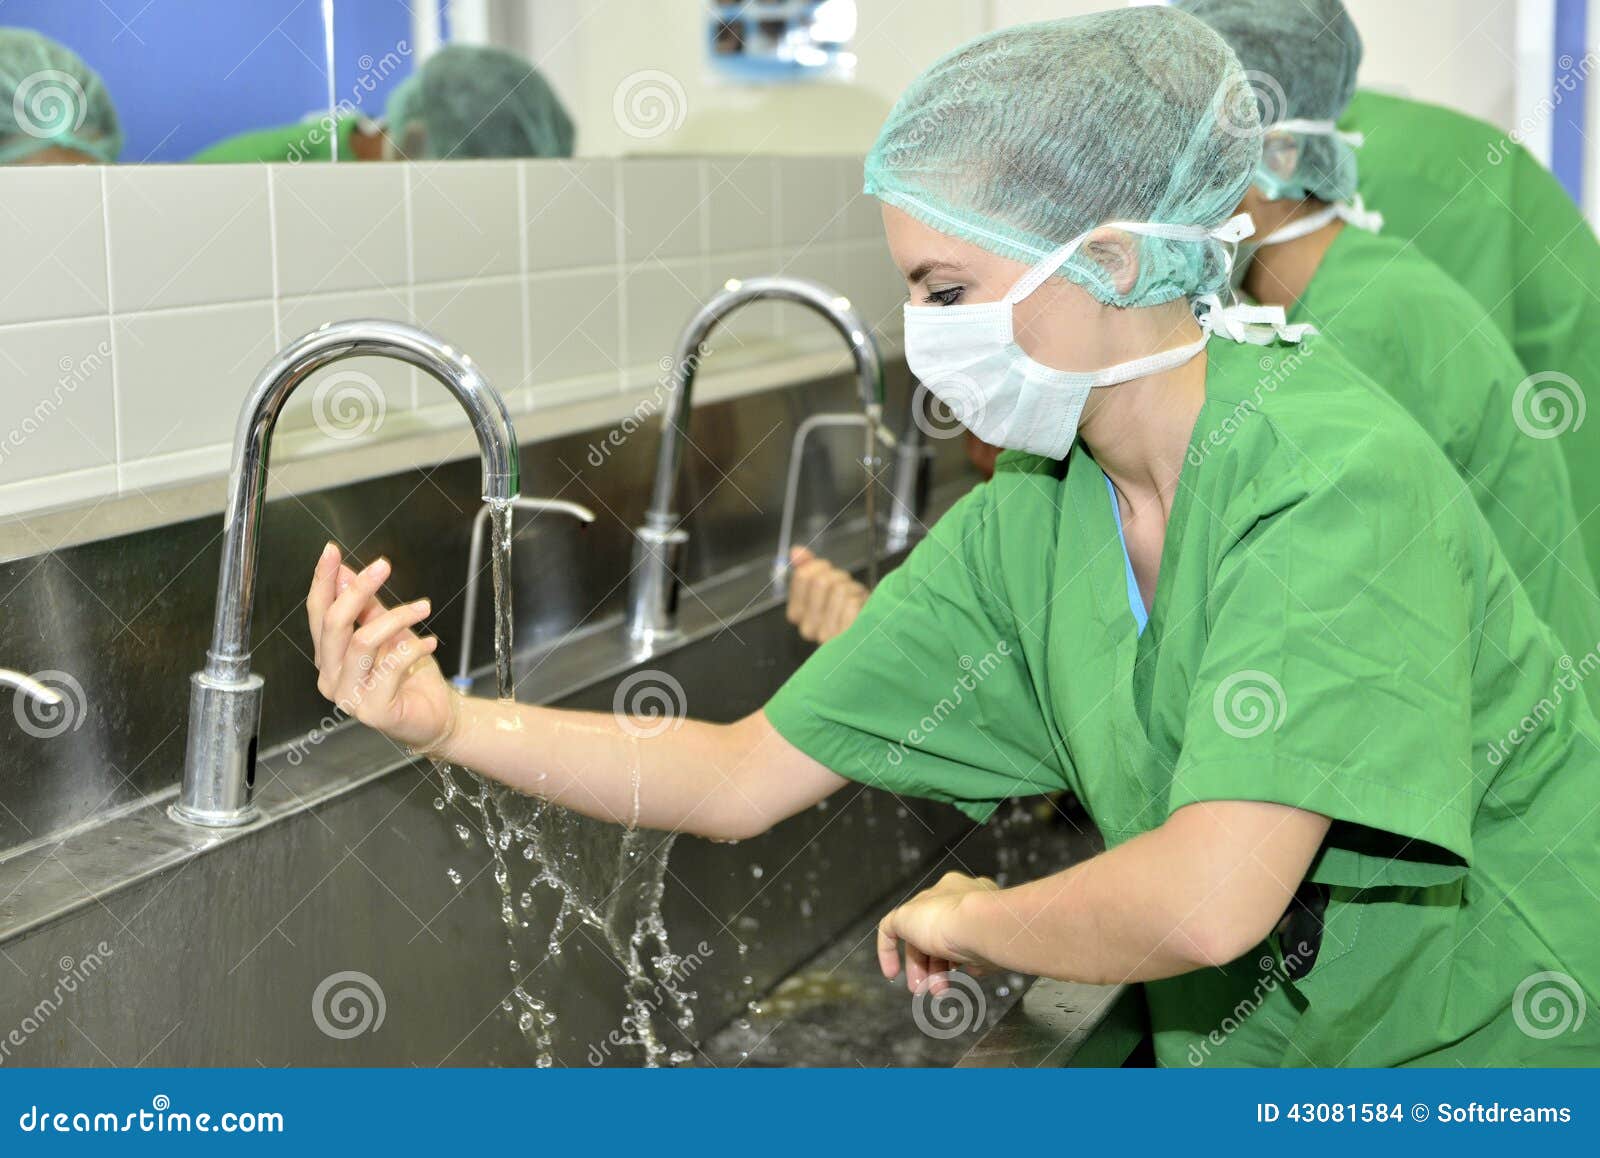 Очистка перед операцией. Гигиена в медицине. Мытье рук в хирургии. Мытье рук в операционной.